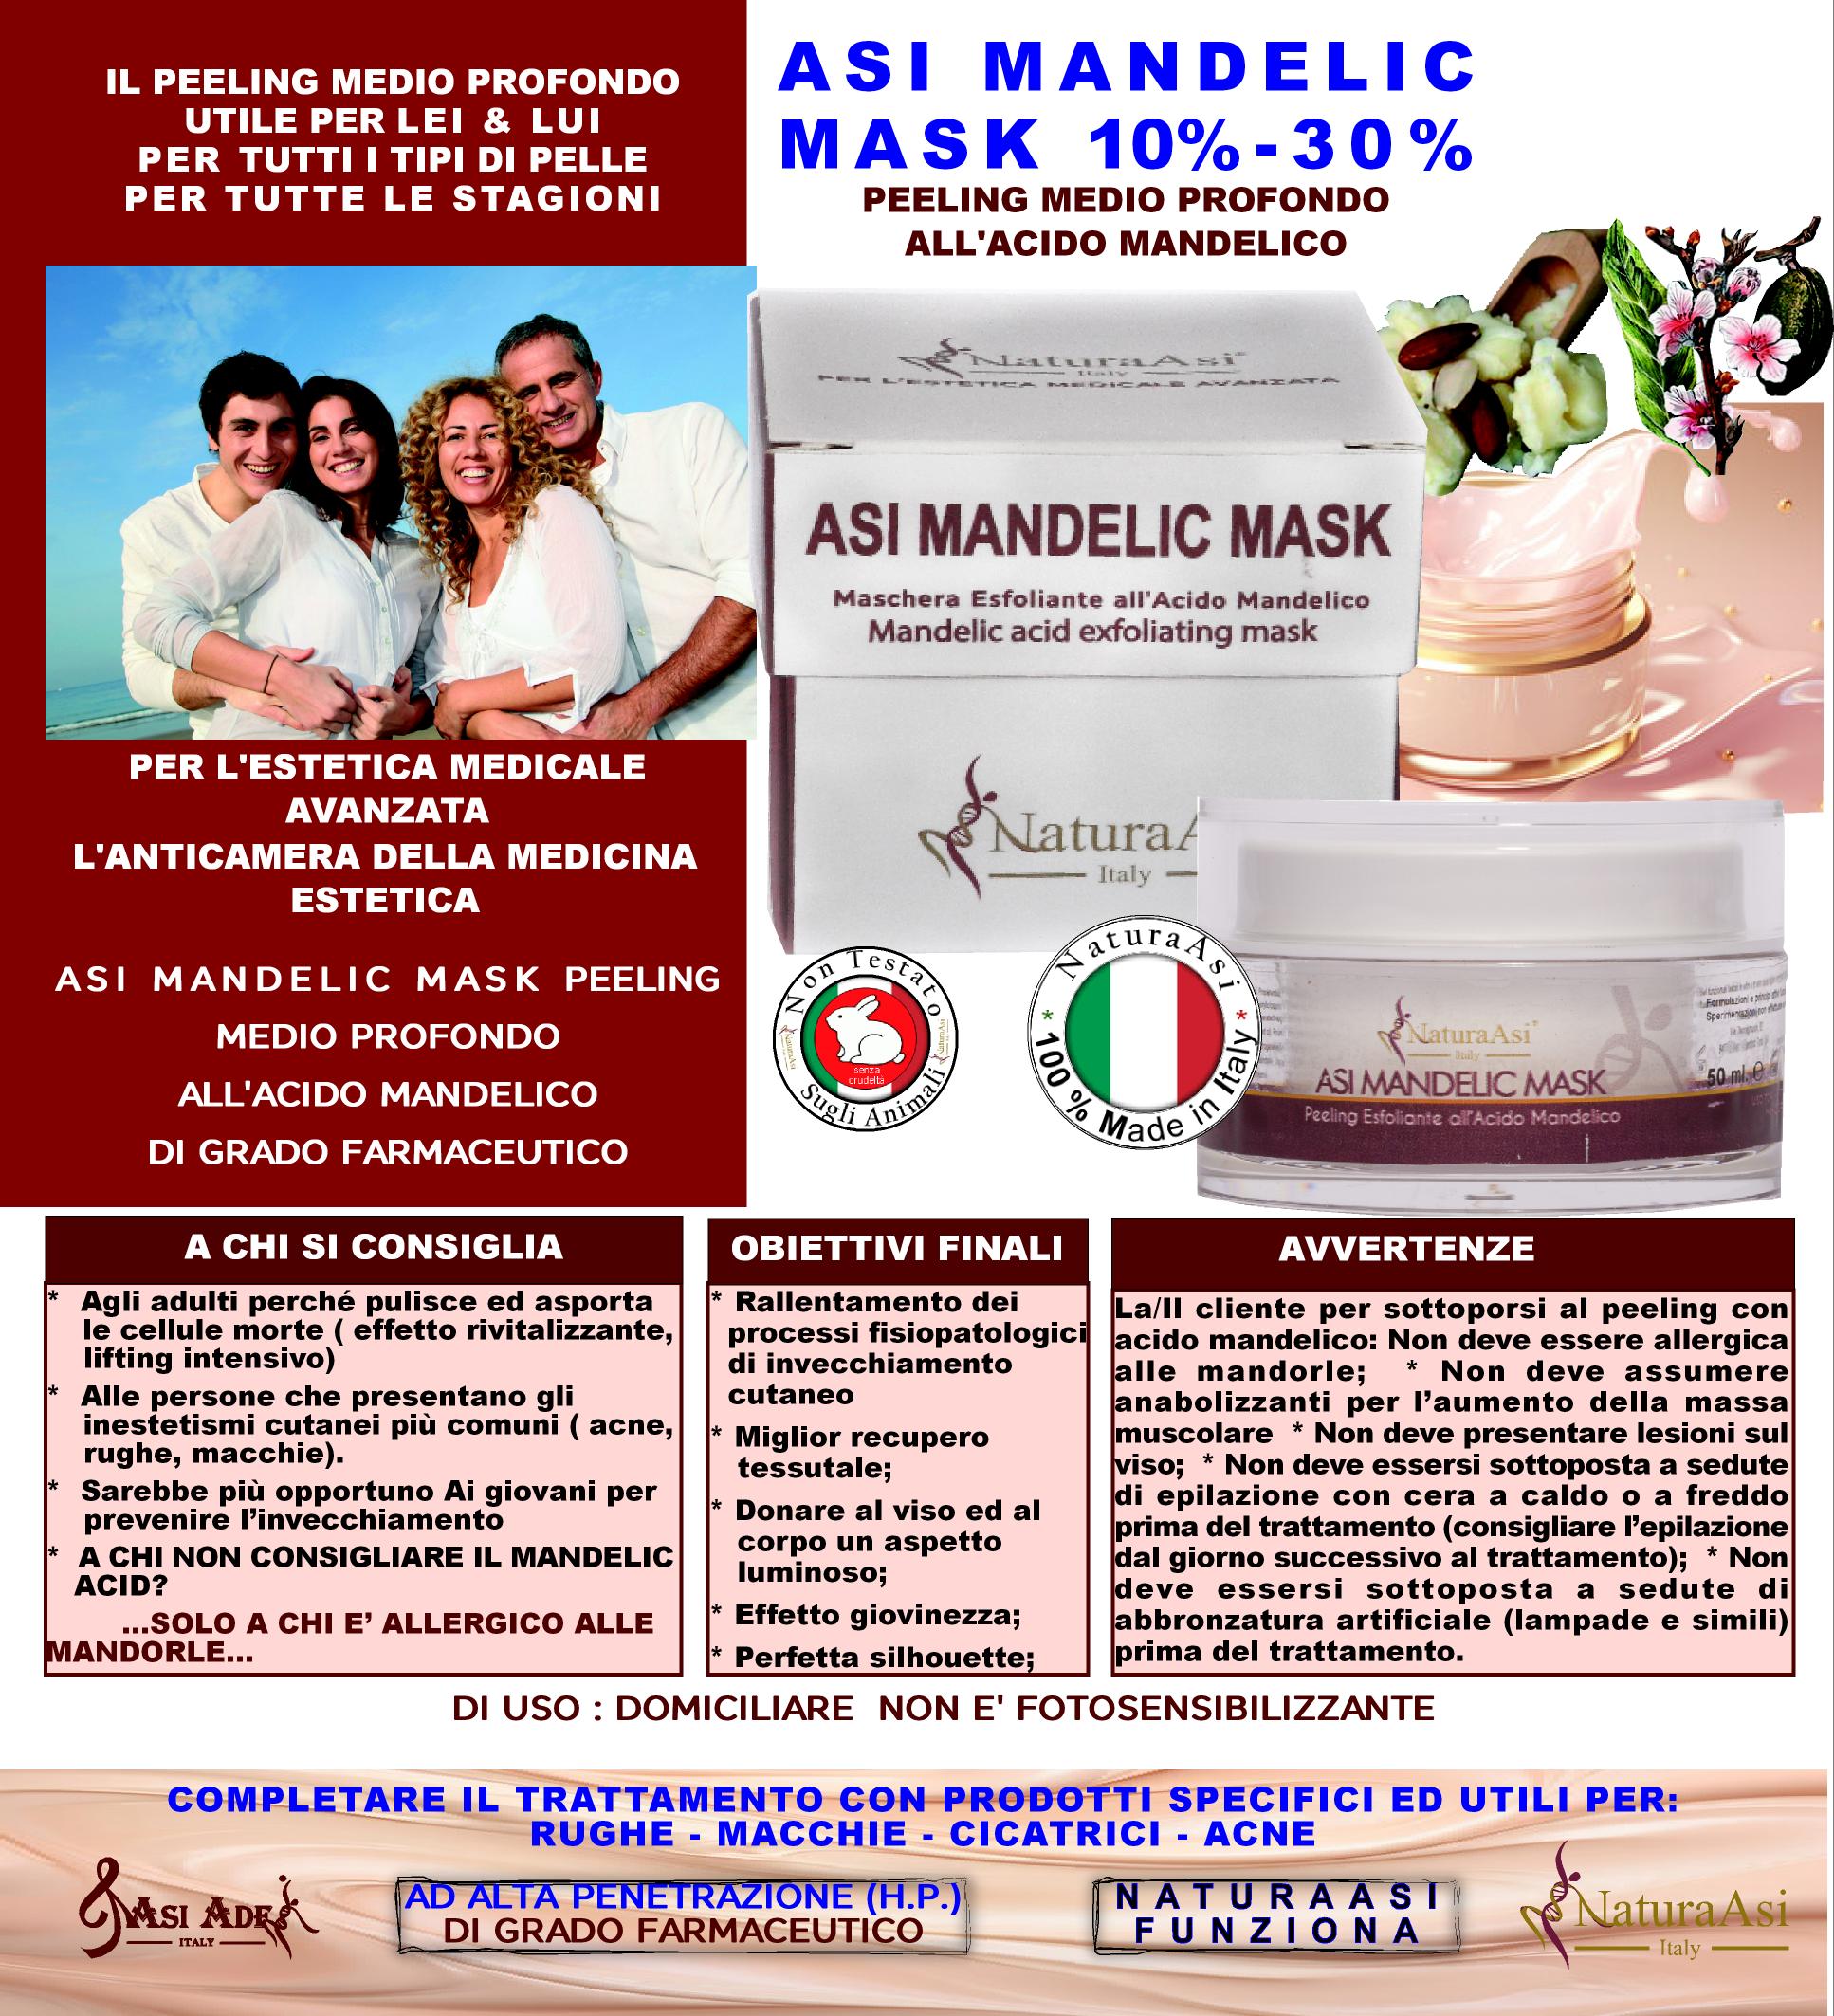 ASI MANDELIC MASK | NaturaAsi™